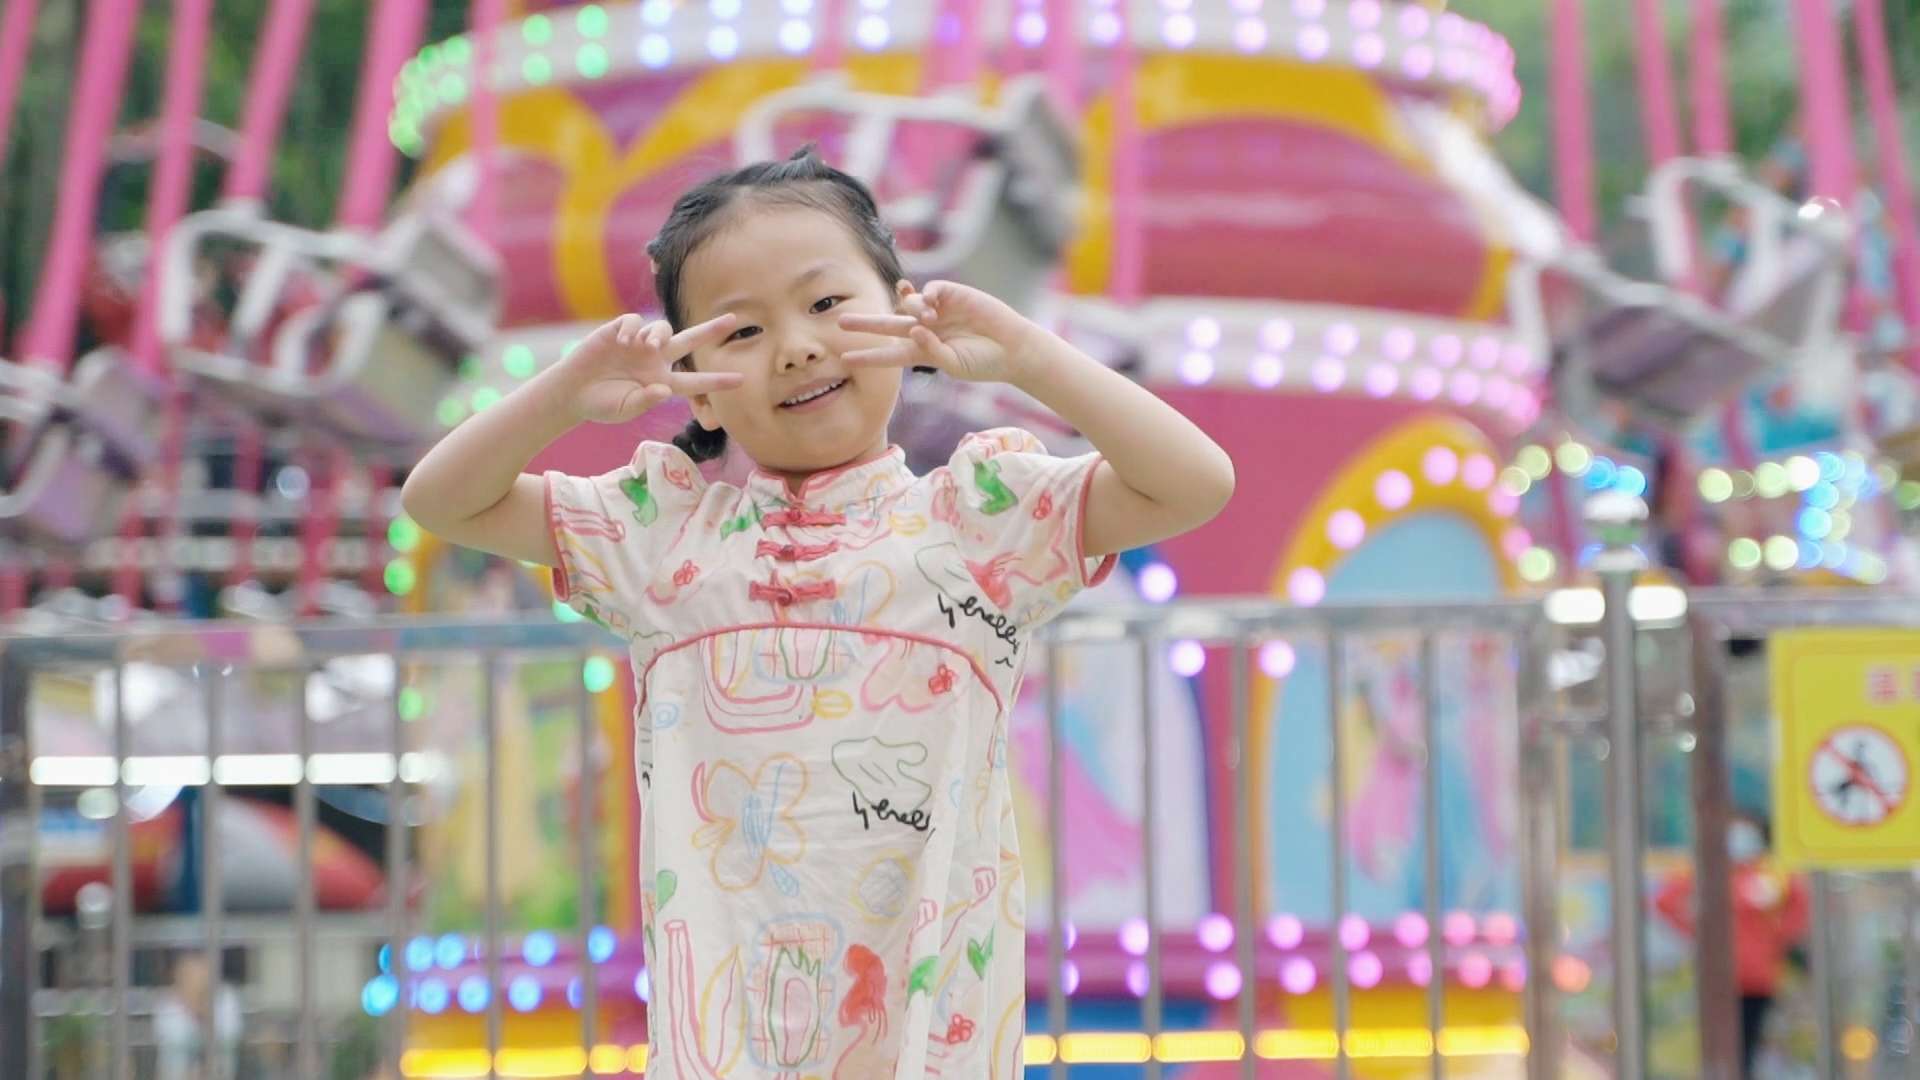 深圳龙岗区求水山儿童乐园真的太适合孩子游玩和拍摄了。